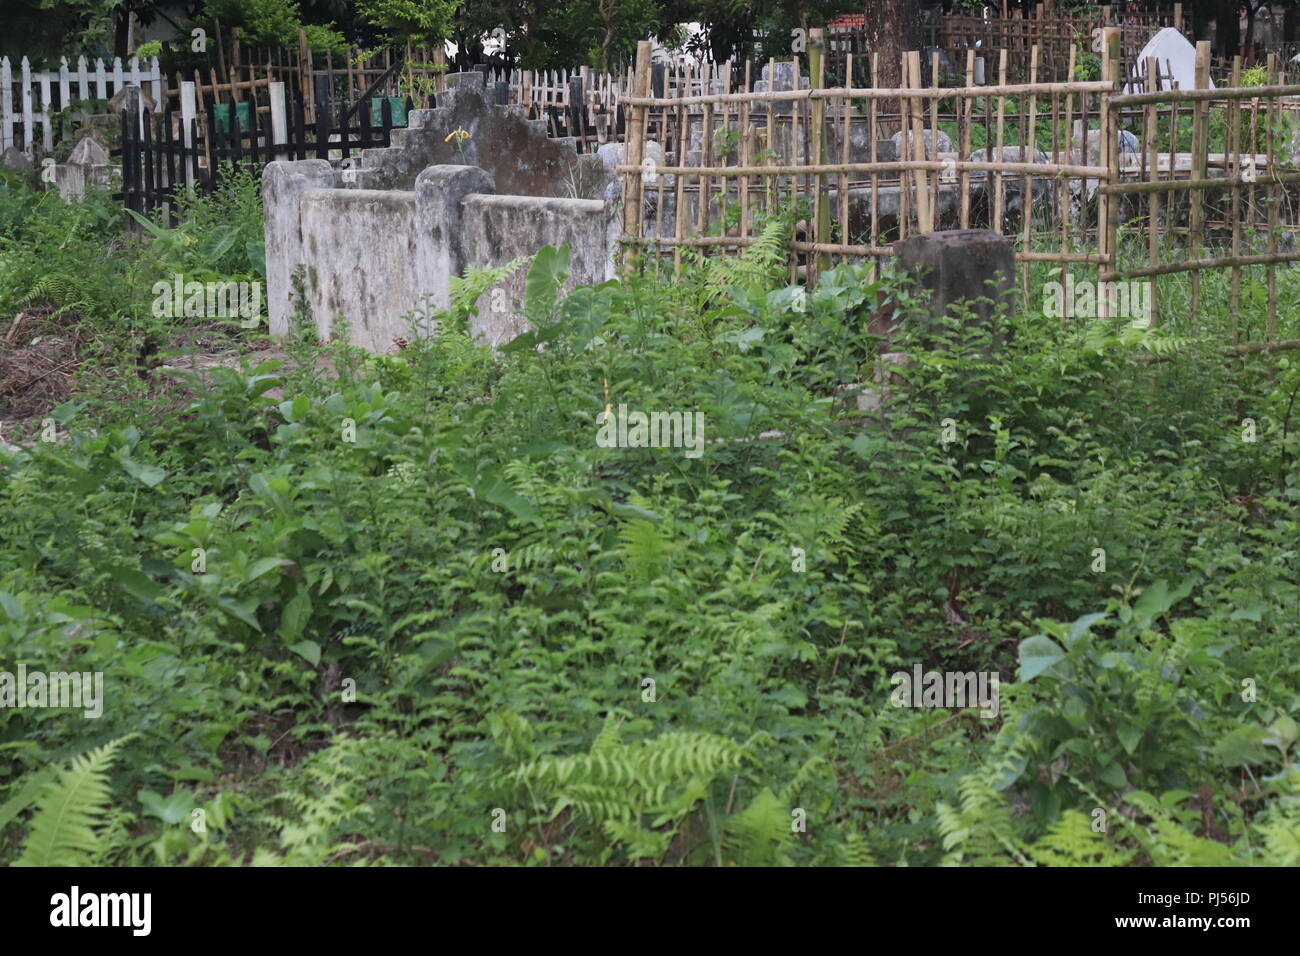 Tombes au cimetière musulman musulmane.cimetière avec entouré par une clôture de bambou.Nouveau Bangladesh cimetière avec l'escrime en bambou. Banque D'Images